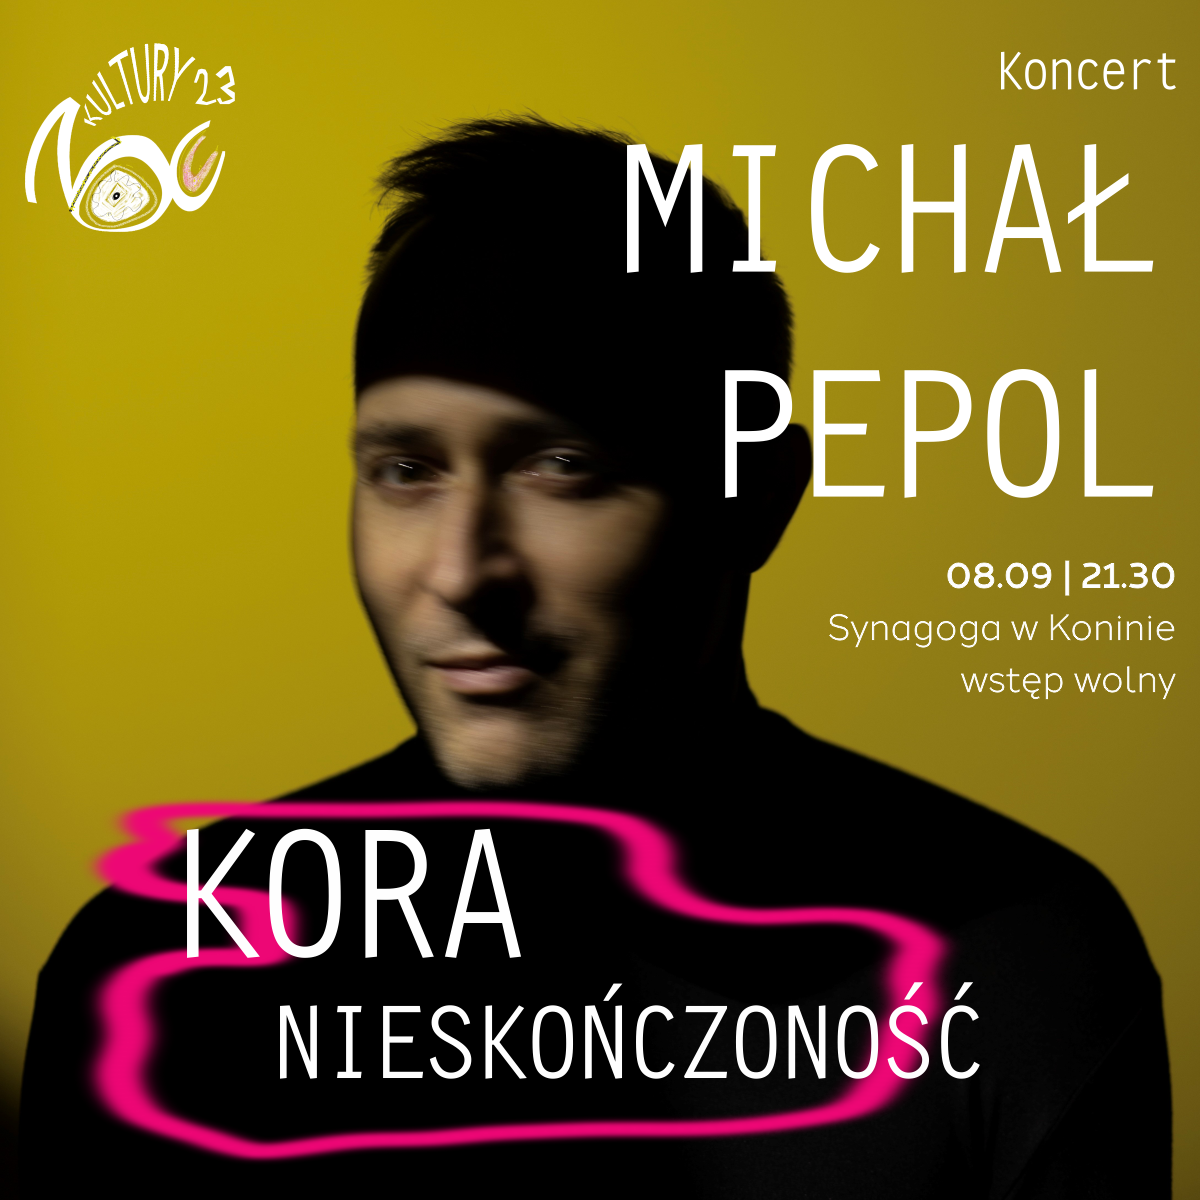 NOC KULTURY: Koncert Michała Pepola „Kora nieskończoność”